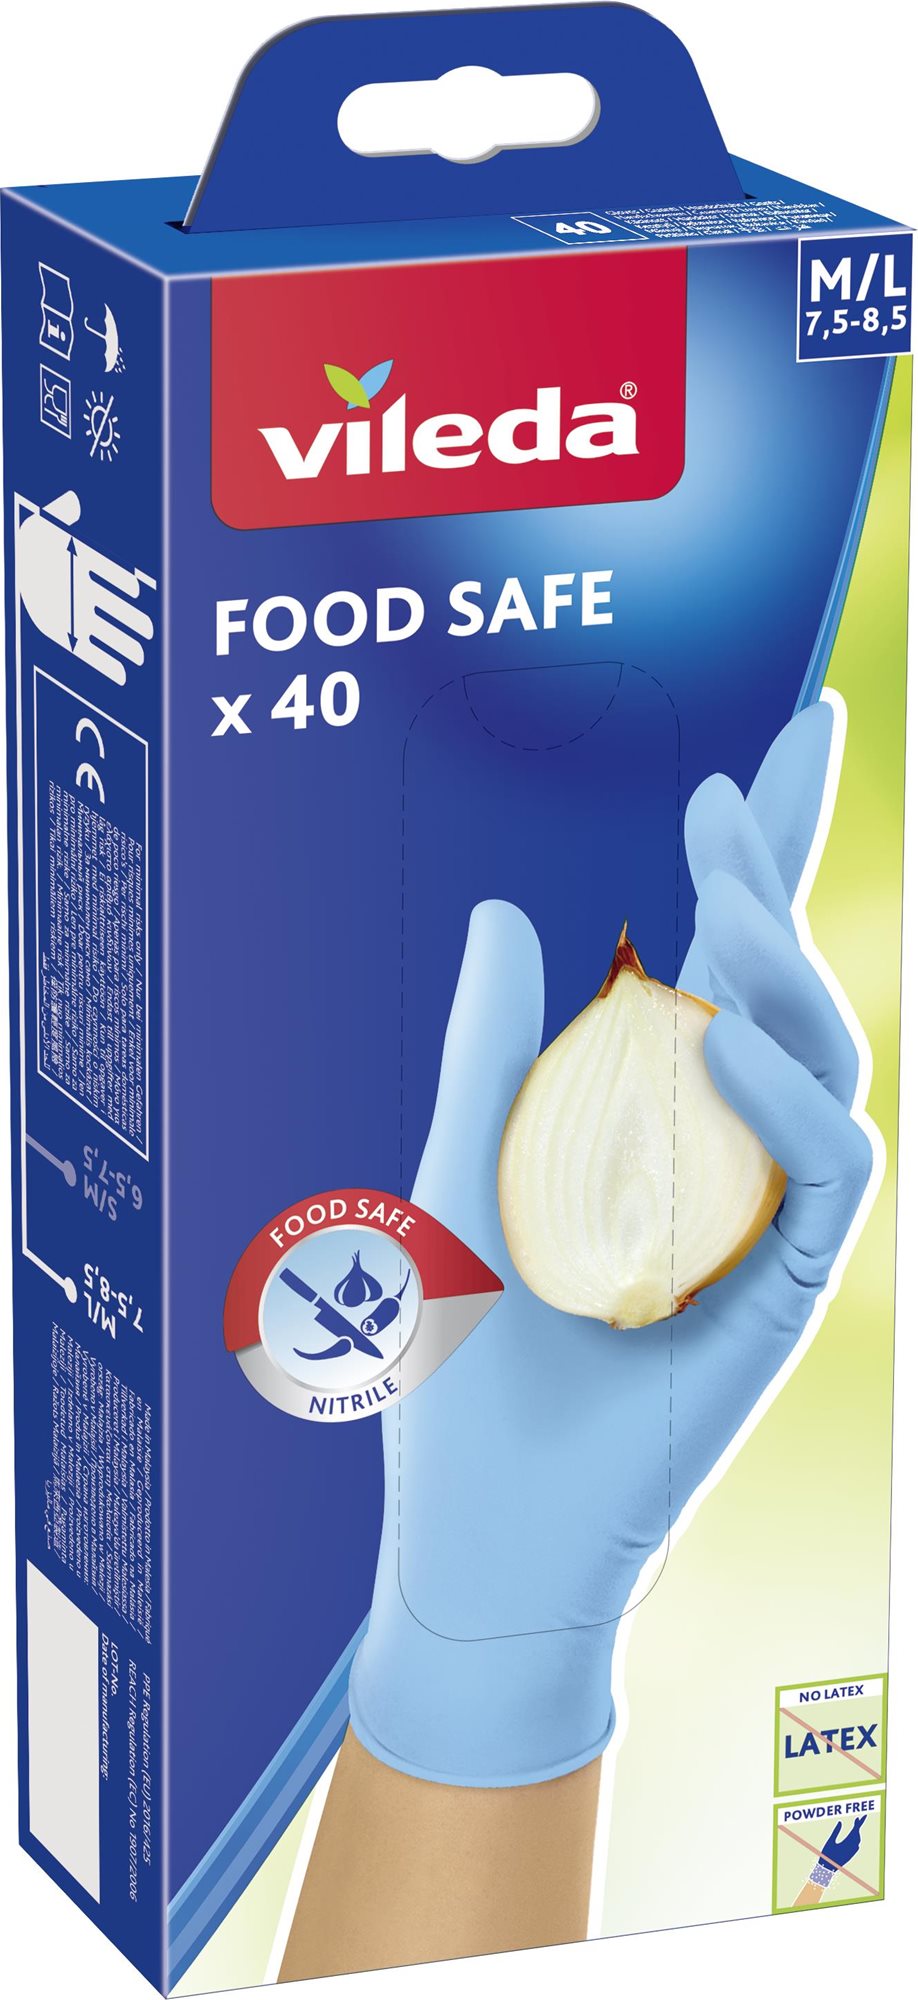 Egyszer használatos kesztyű VILEDA Food Safe Kesztyű M/L 40 db